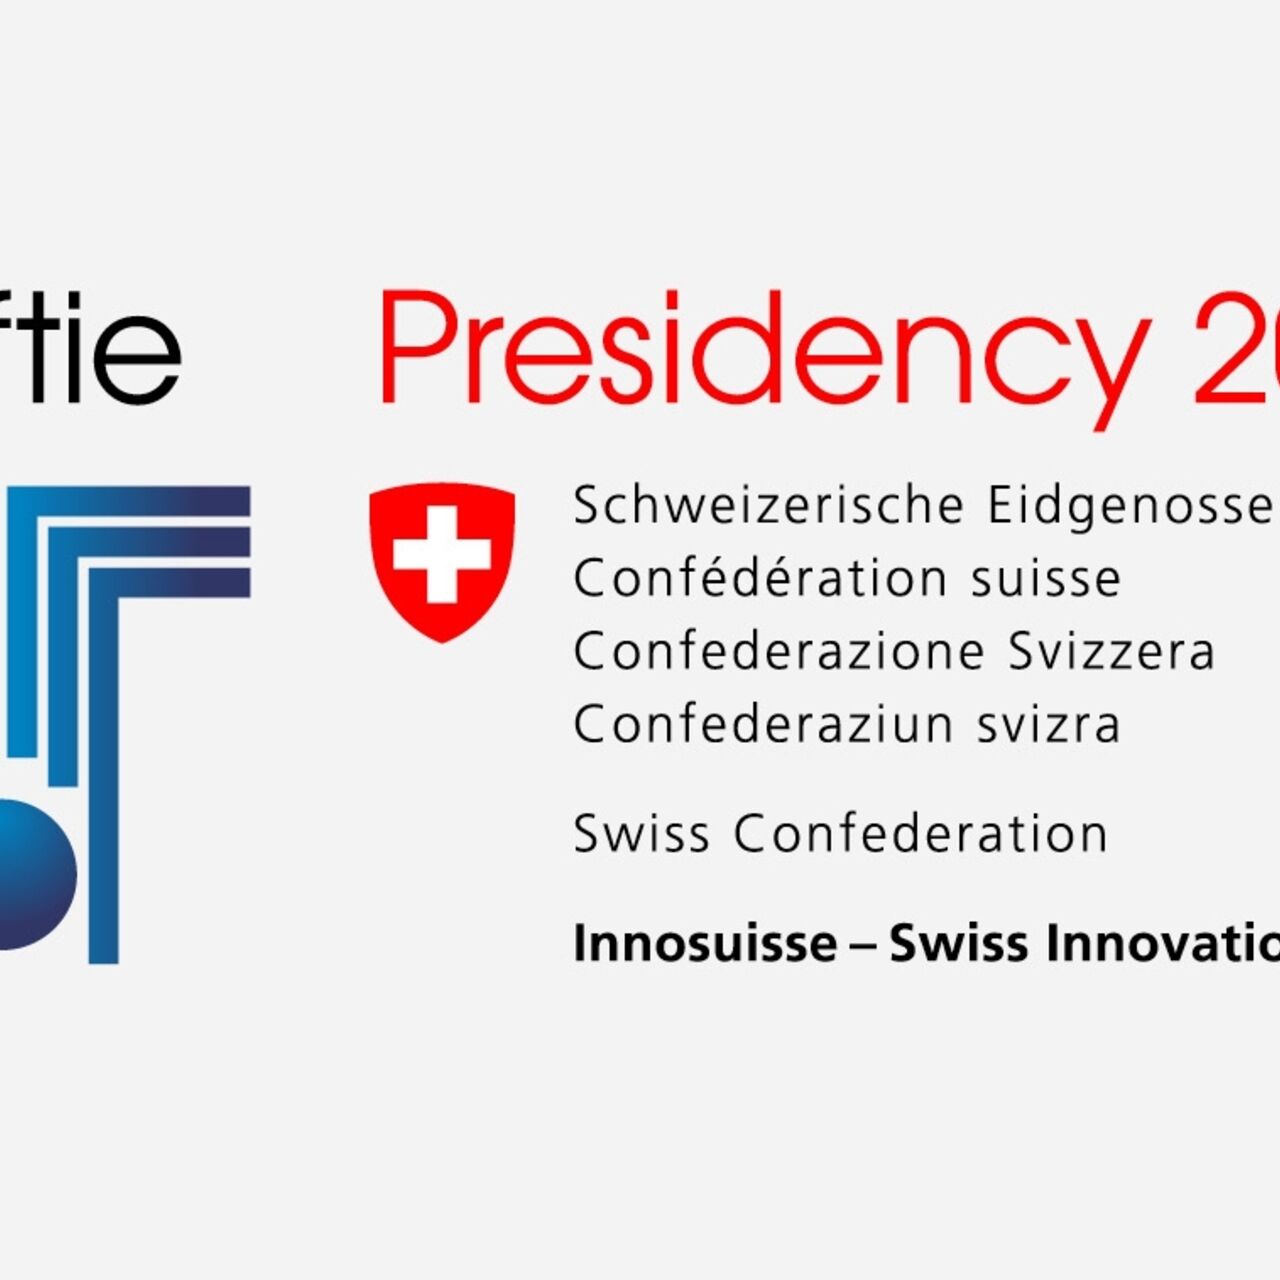 Innosuisse: the key visual of the TAFTIE 2024 presidency